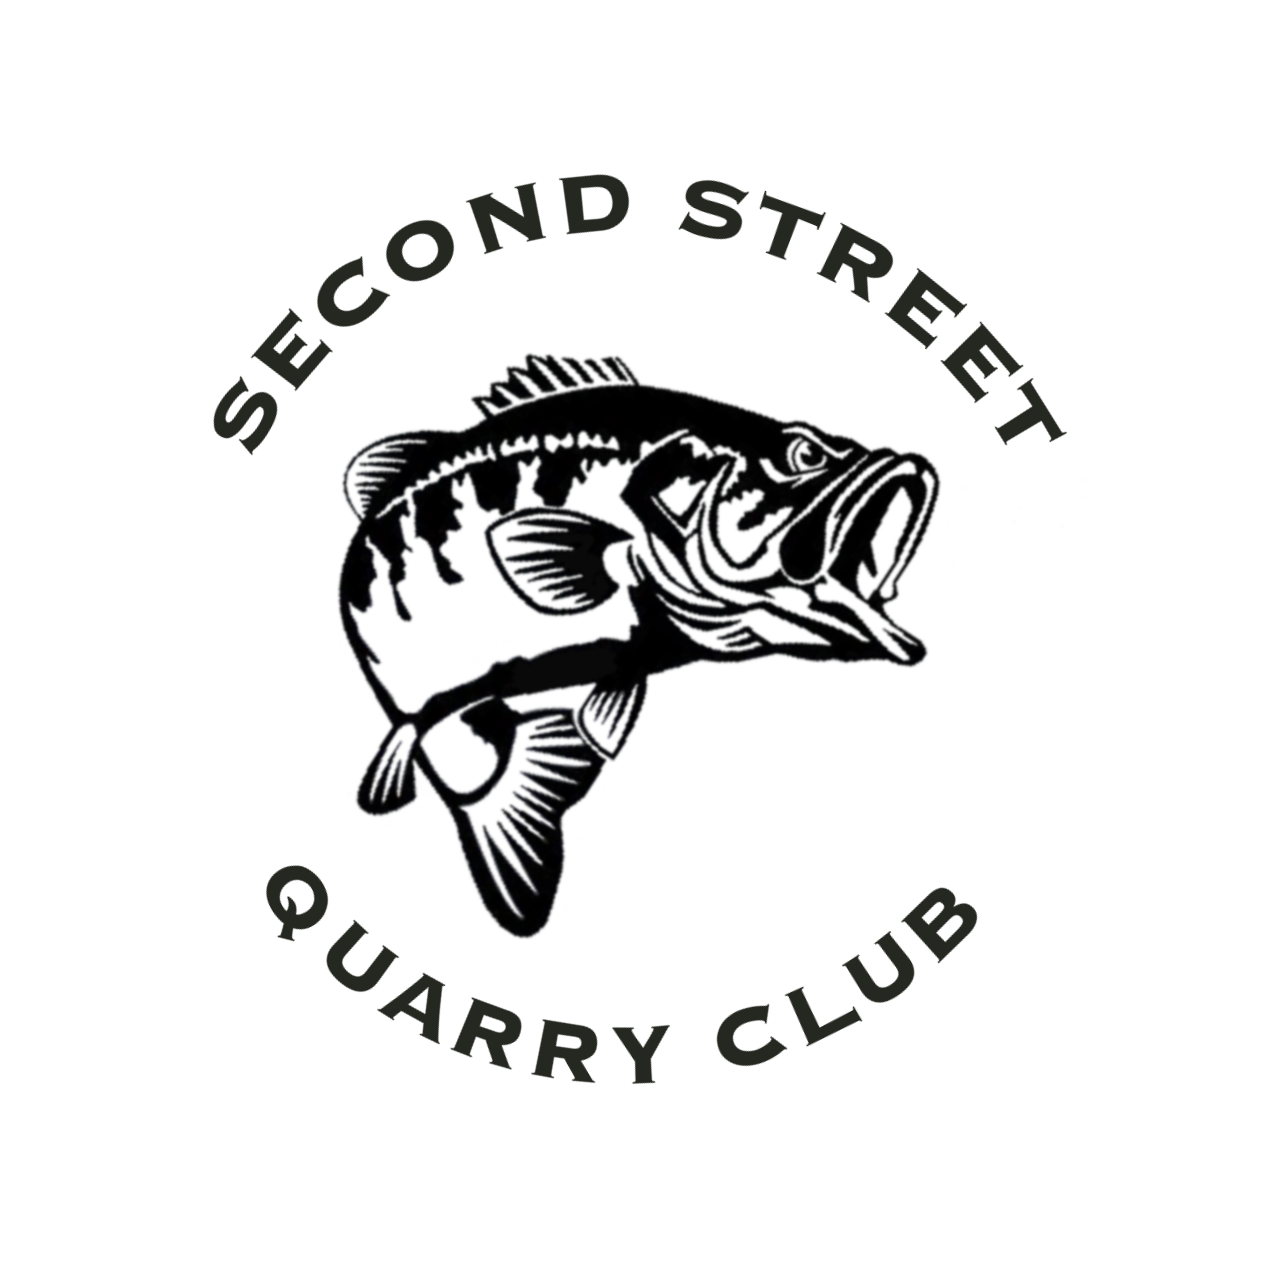 Second Street Quarry Club